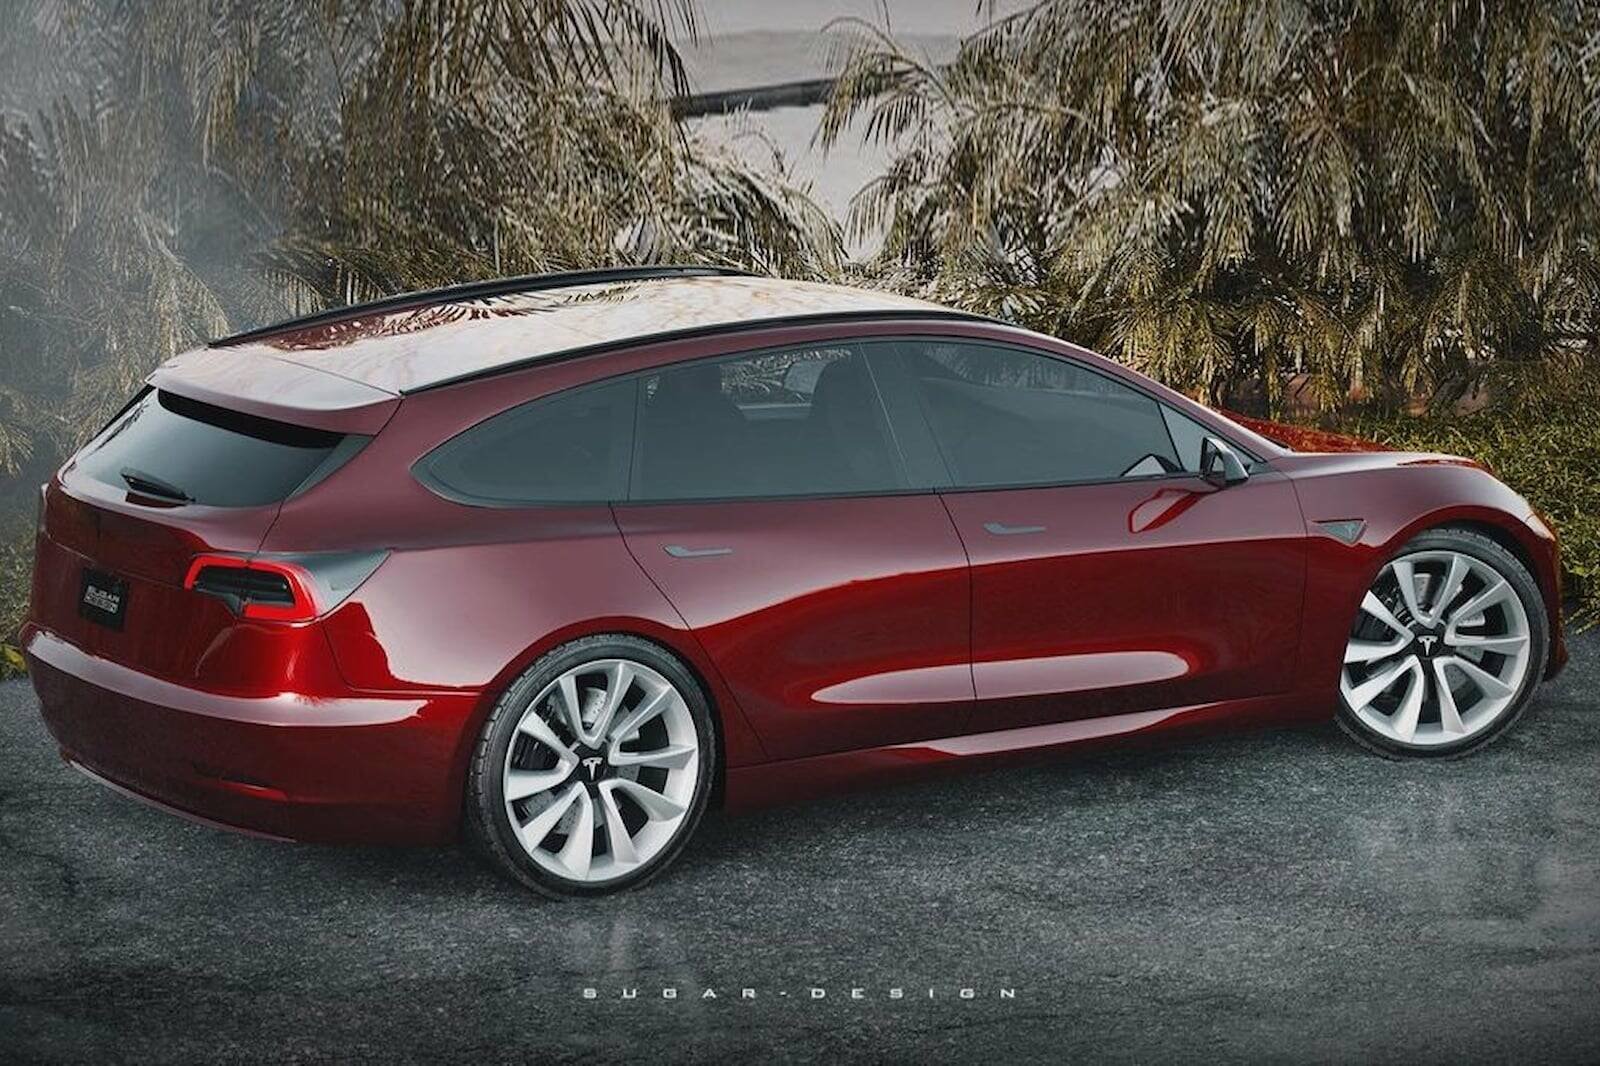 Immagine di Tesla Model 3 Station Wagon e se fosse così?